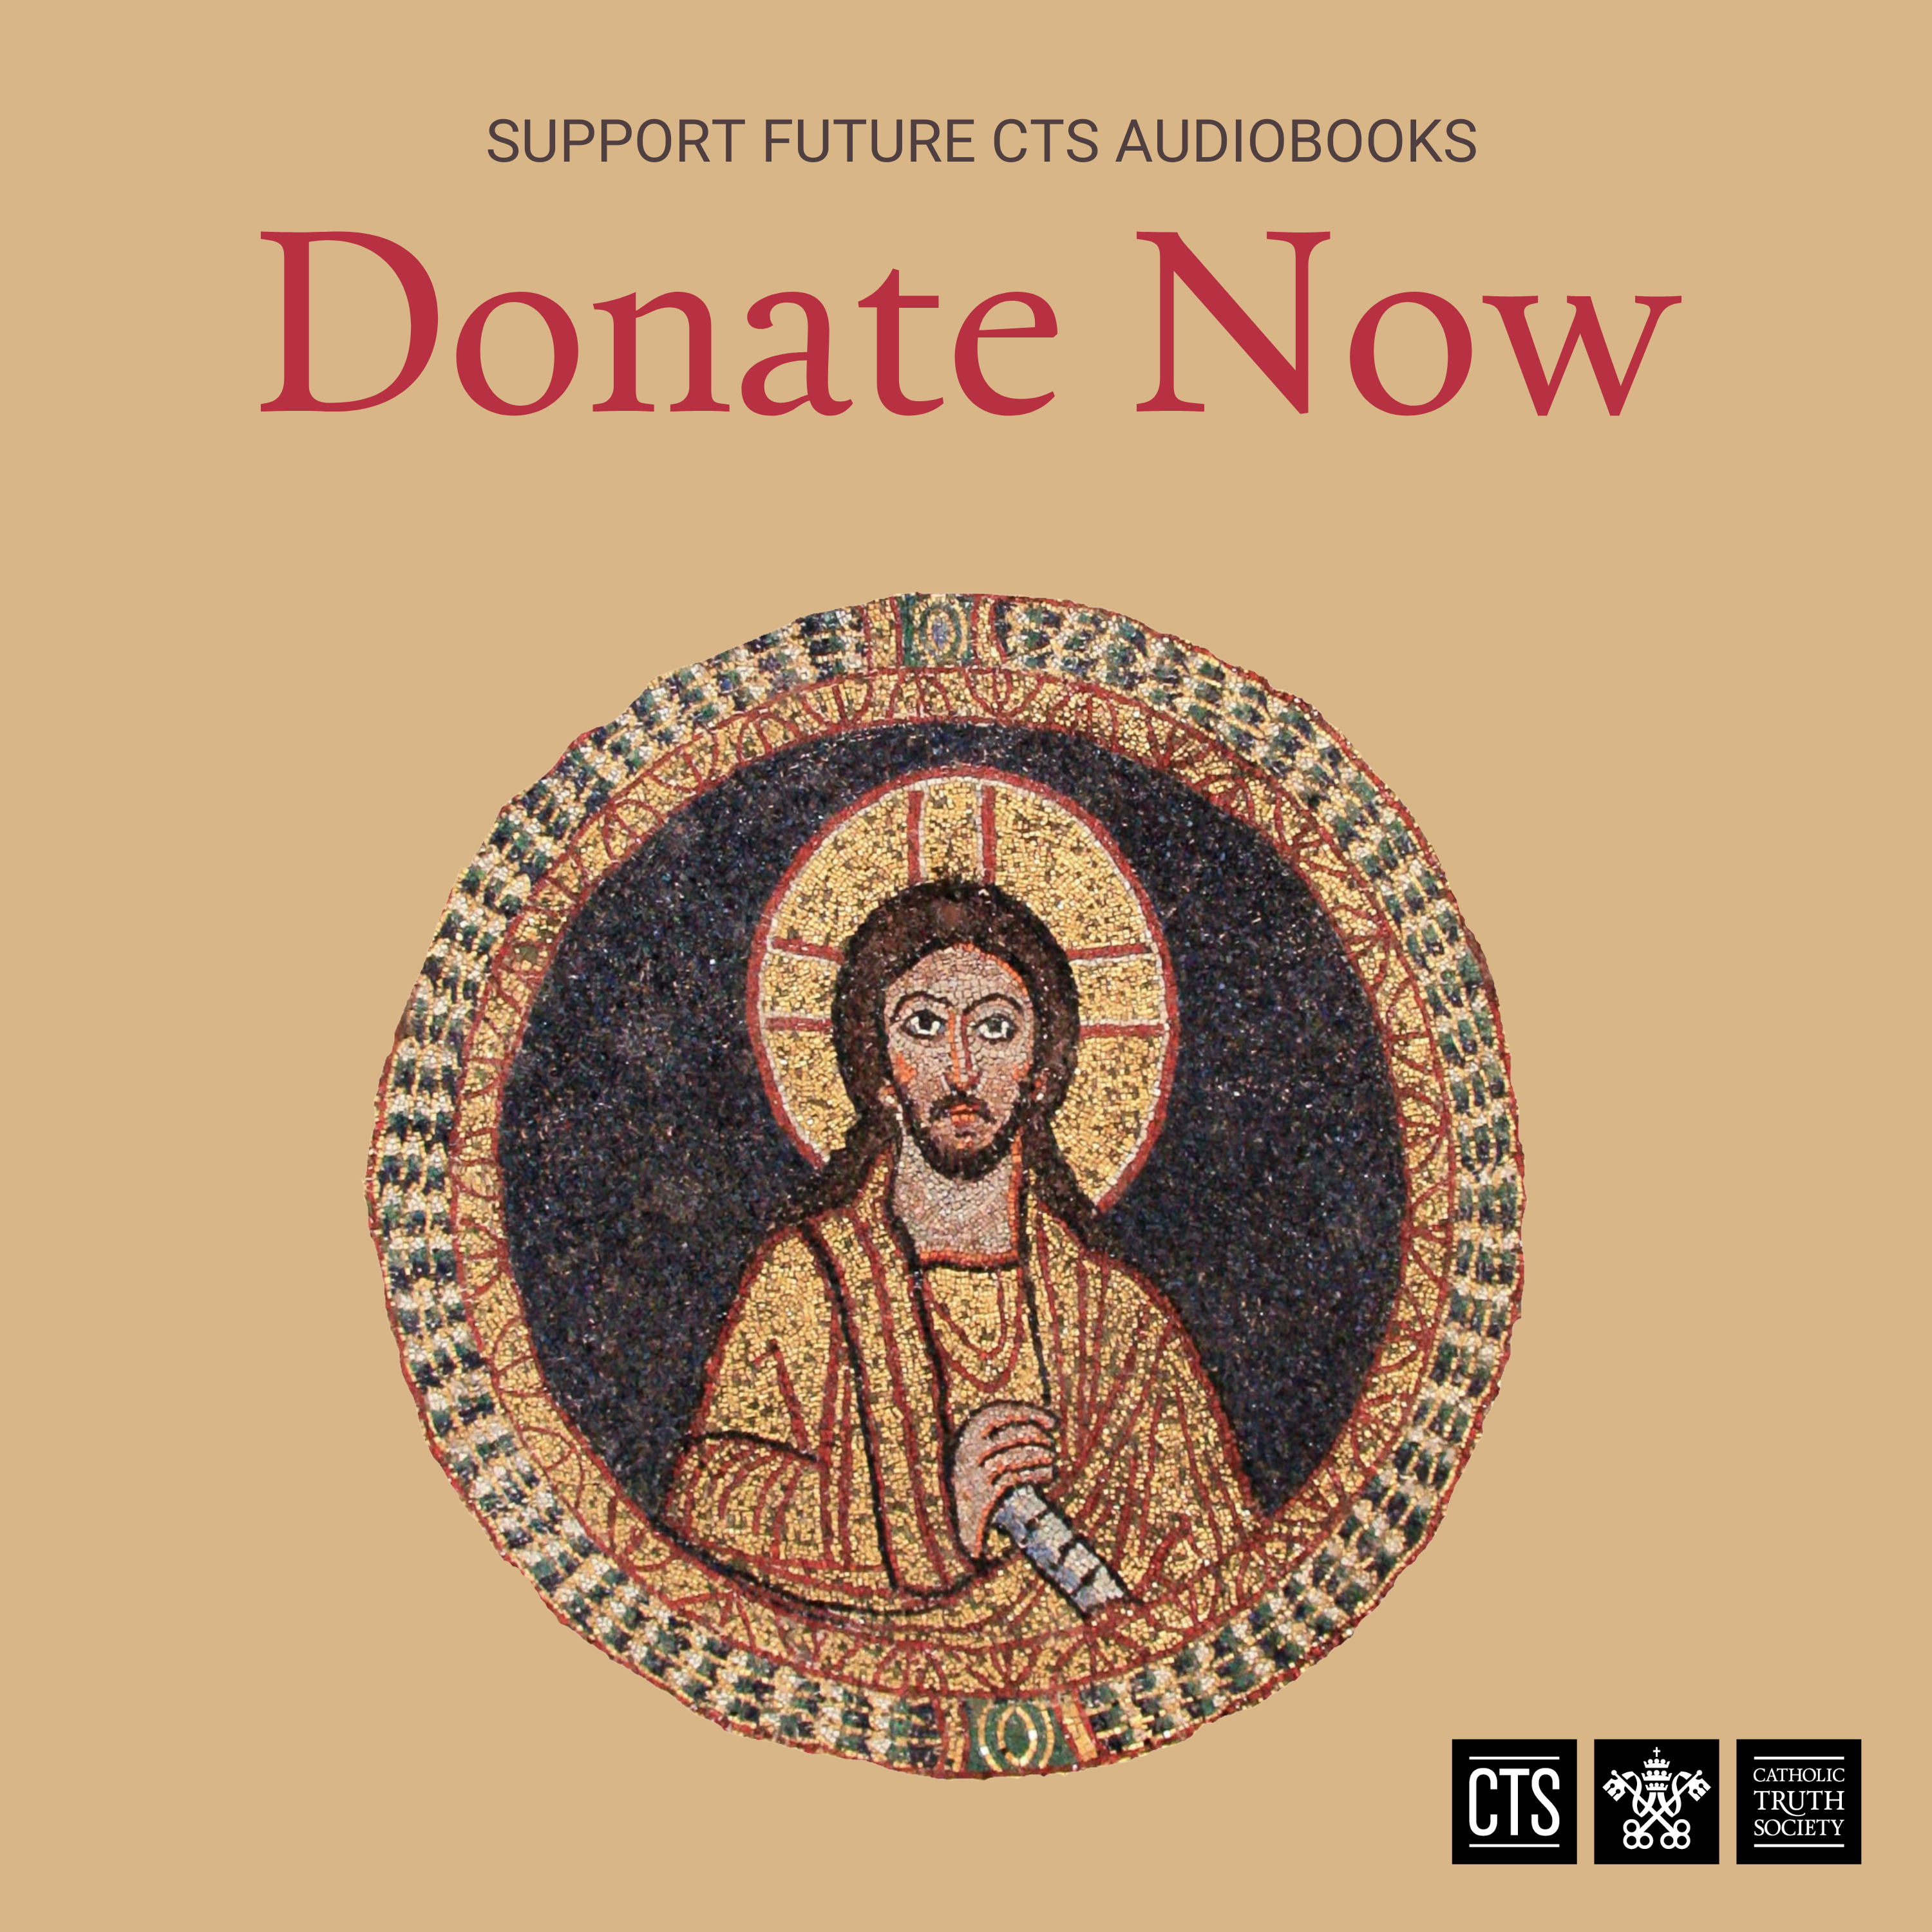 Support Future Audiobooks